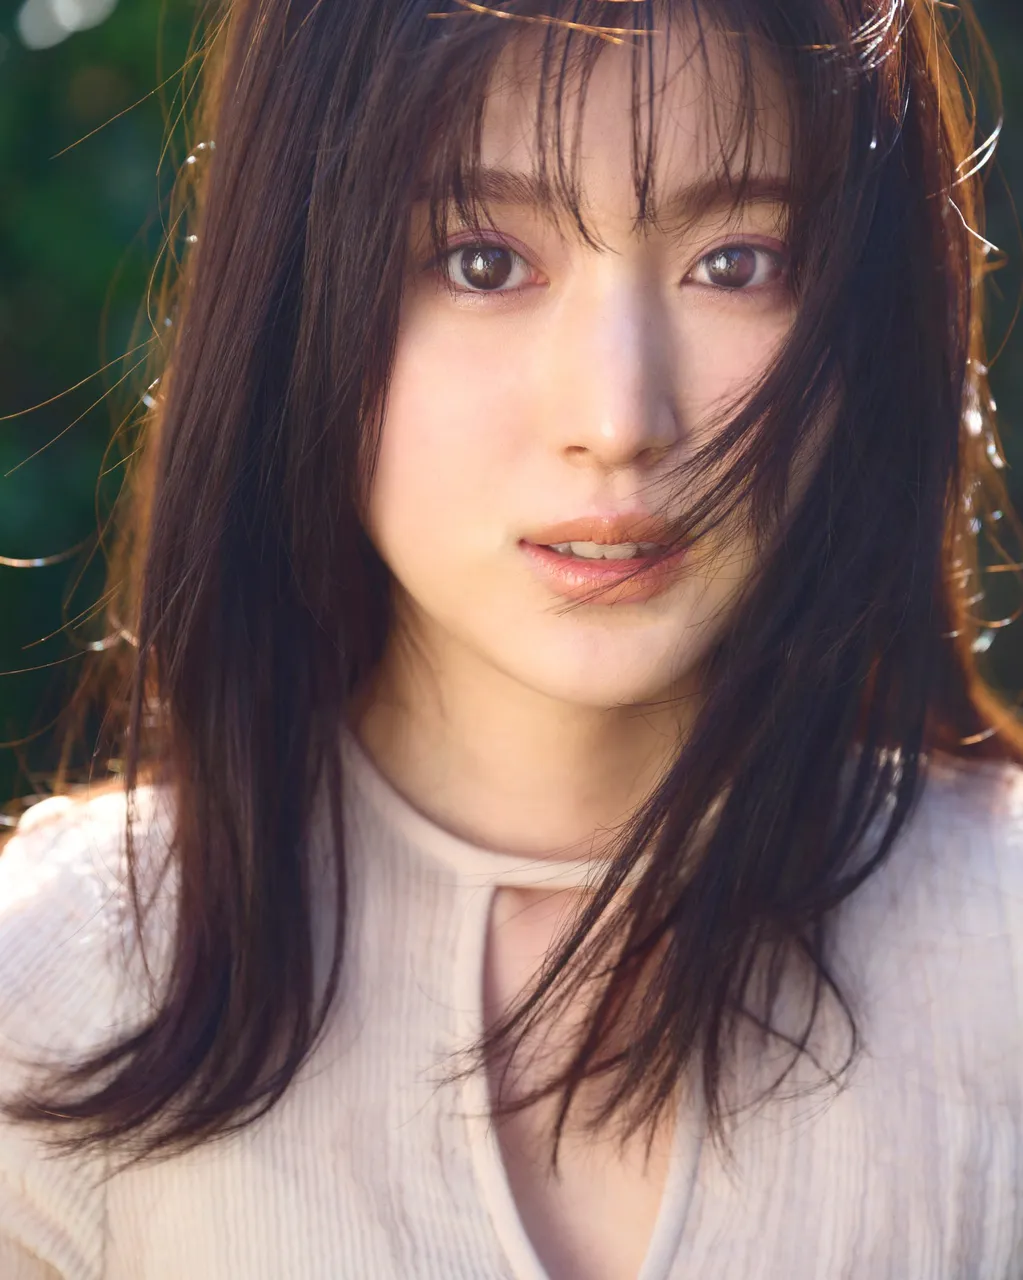 福本莉子のプロフィール・画像・写真 | WEBザテレビジョン